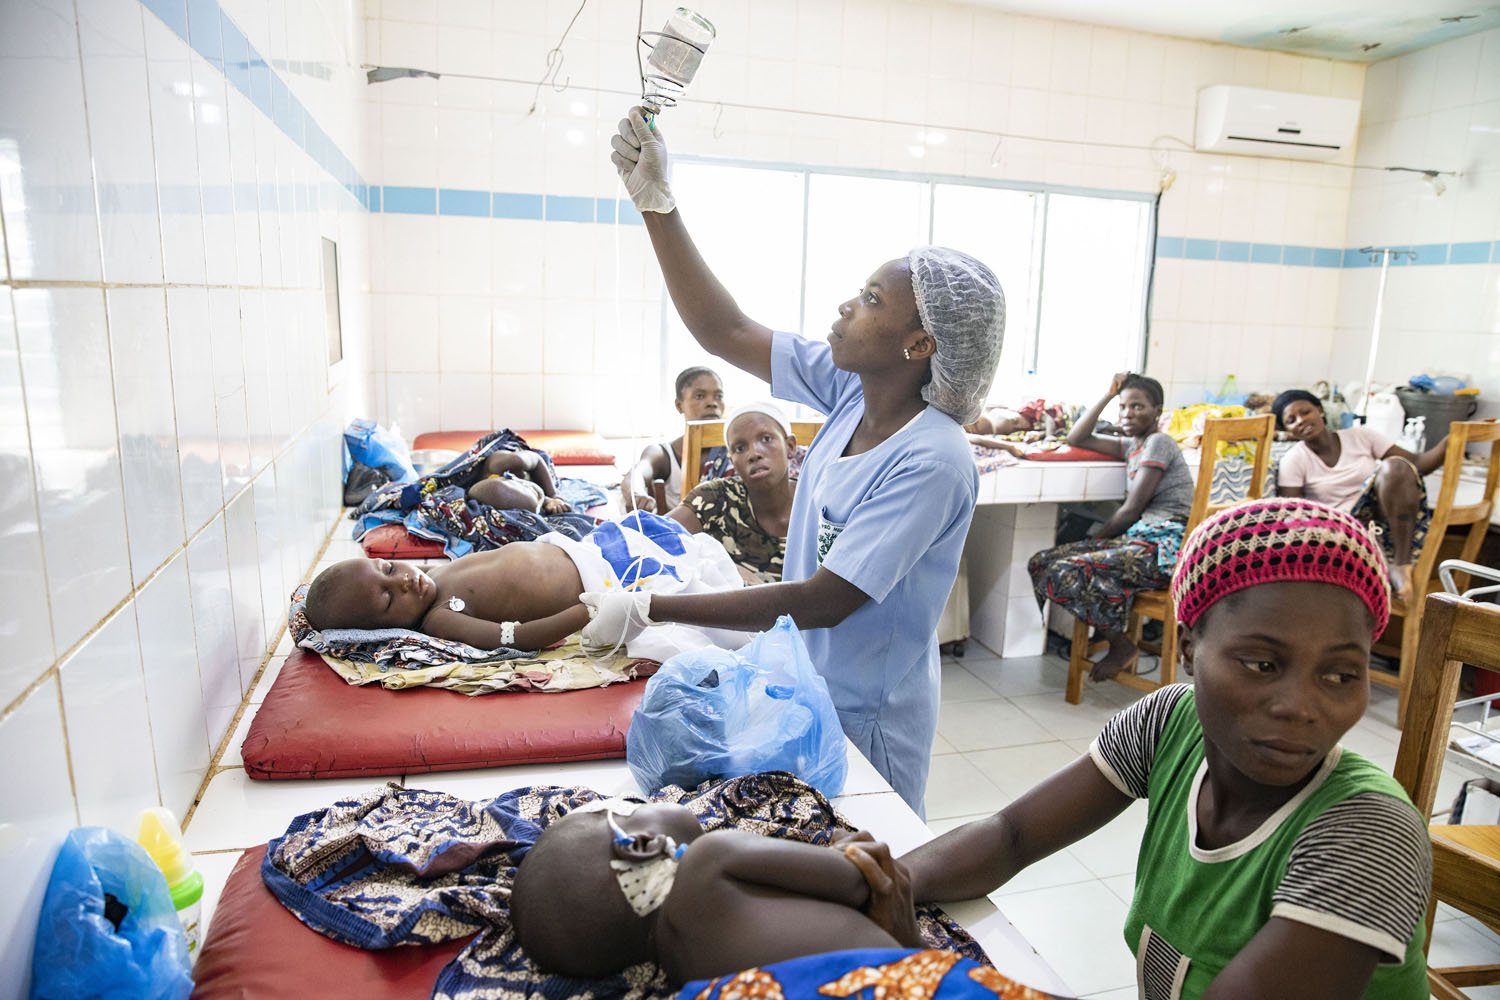 Healthcare Fotografie: in der Notaufnahme eines afrikanischen Krankrenhauses hängt eine Krankenschwester eine Infusion für einen kleinen Patienten an. Weitere Mütter mit ihren kranken Kindern sind im gleichen Raum zu sehen.